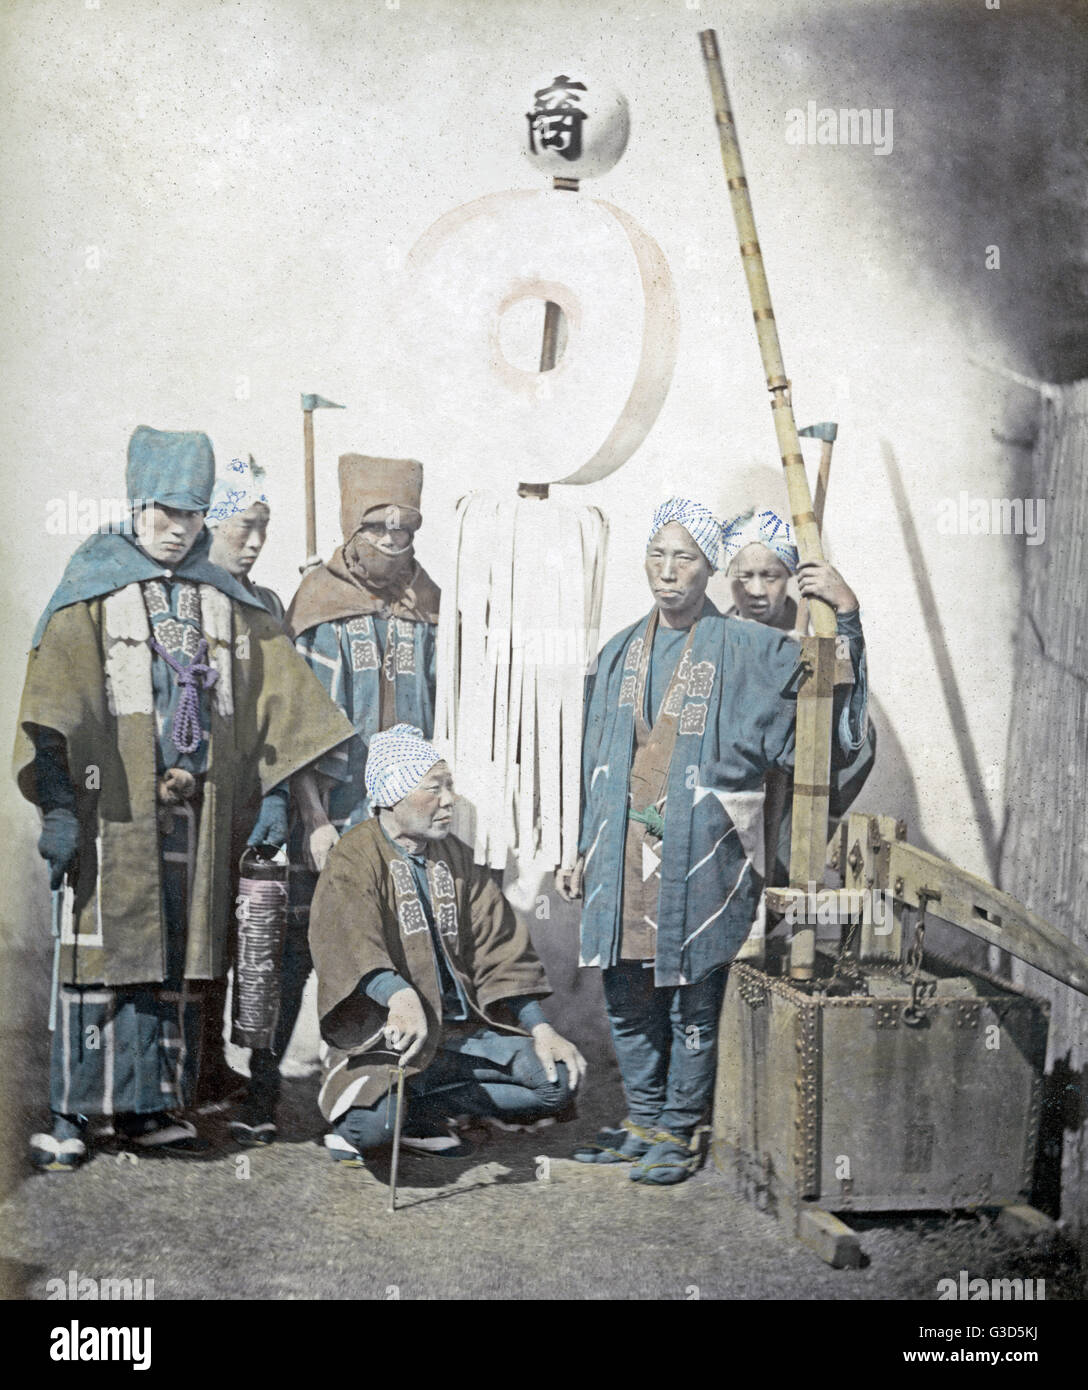 Pompieri giapponesi, Giappone, circa 1870 Foto Stock